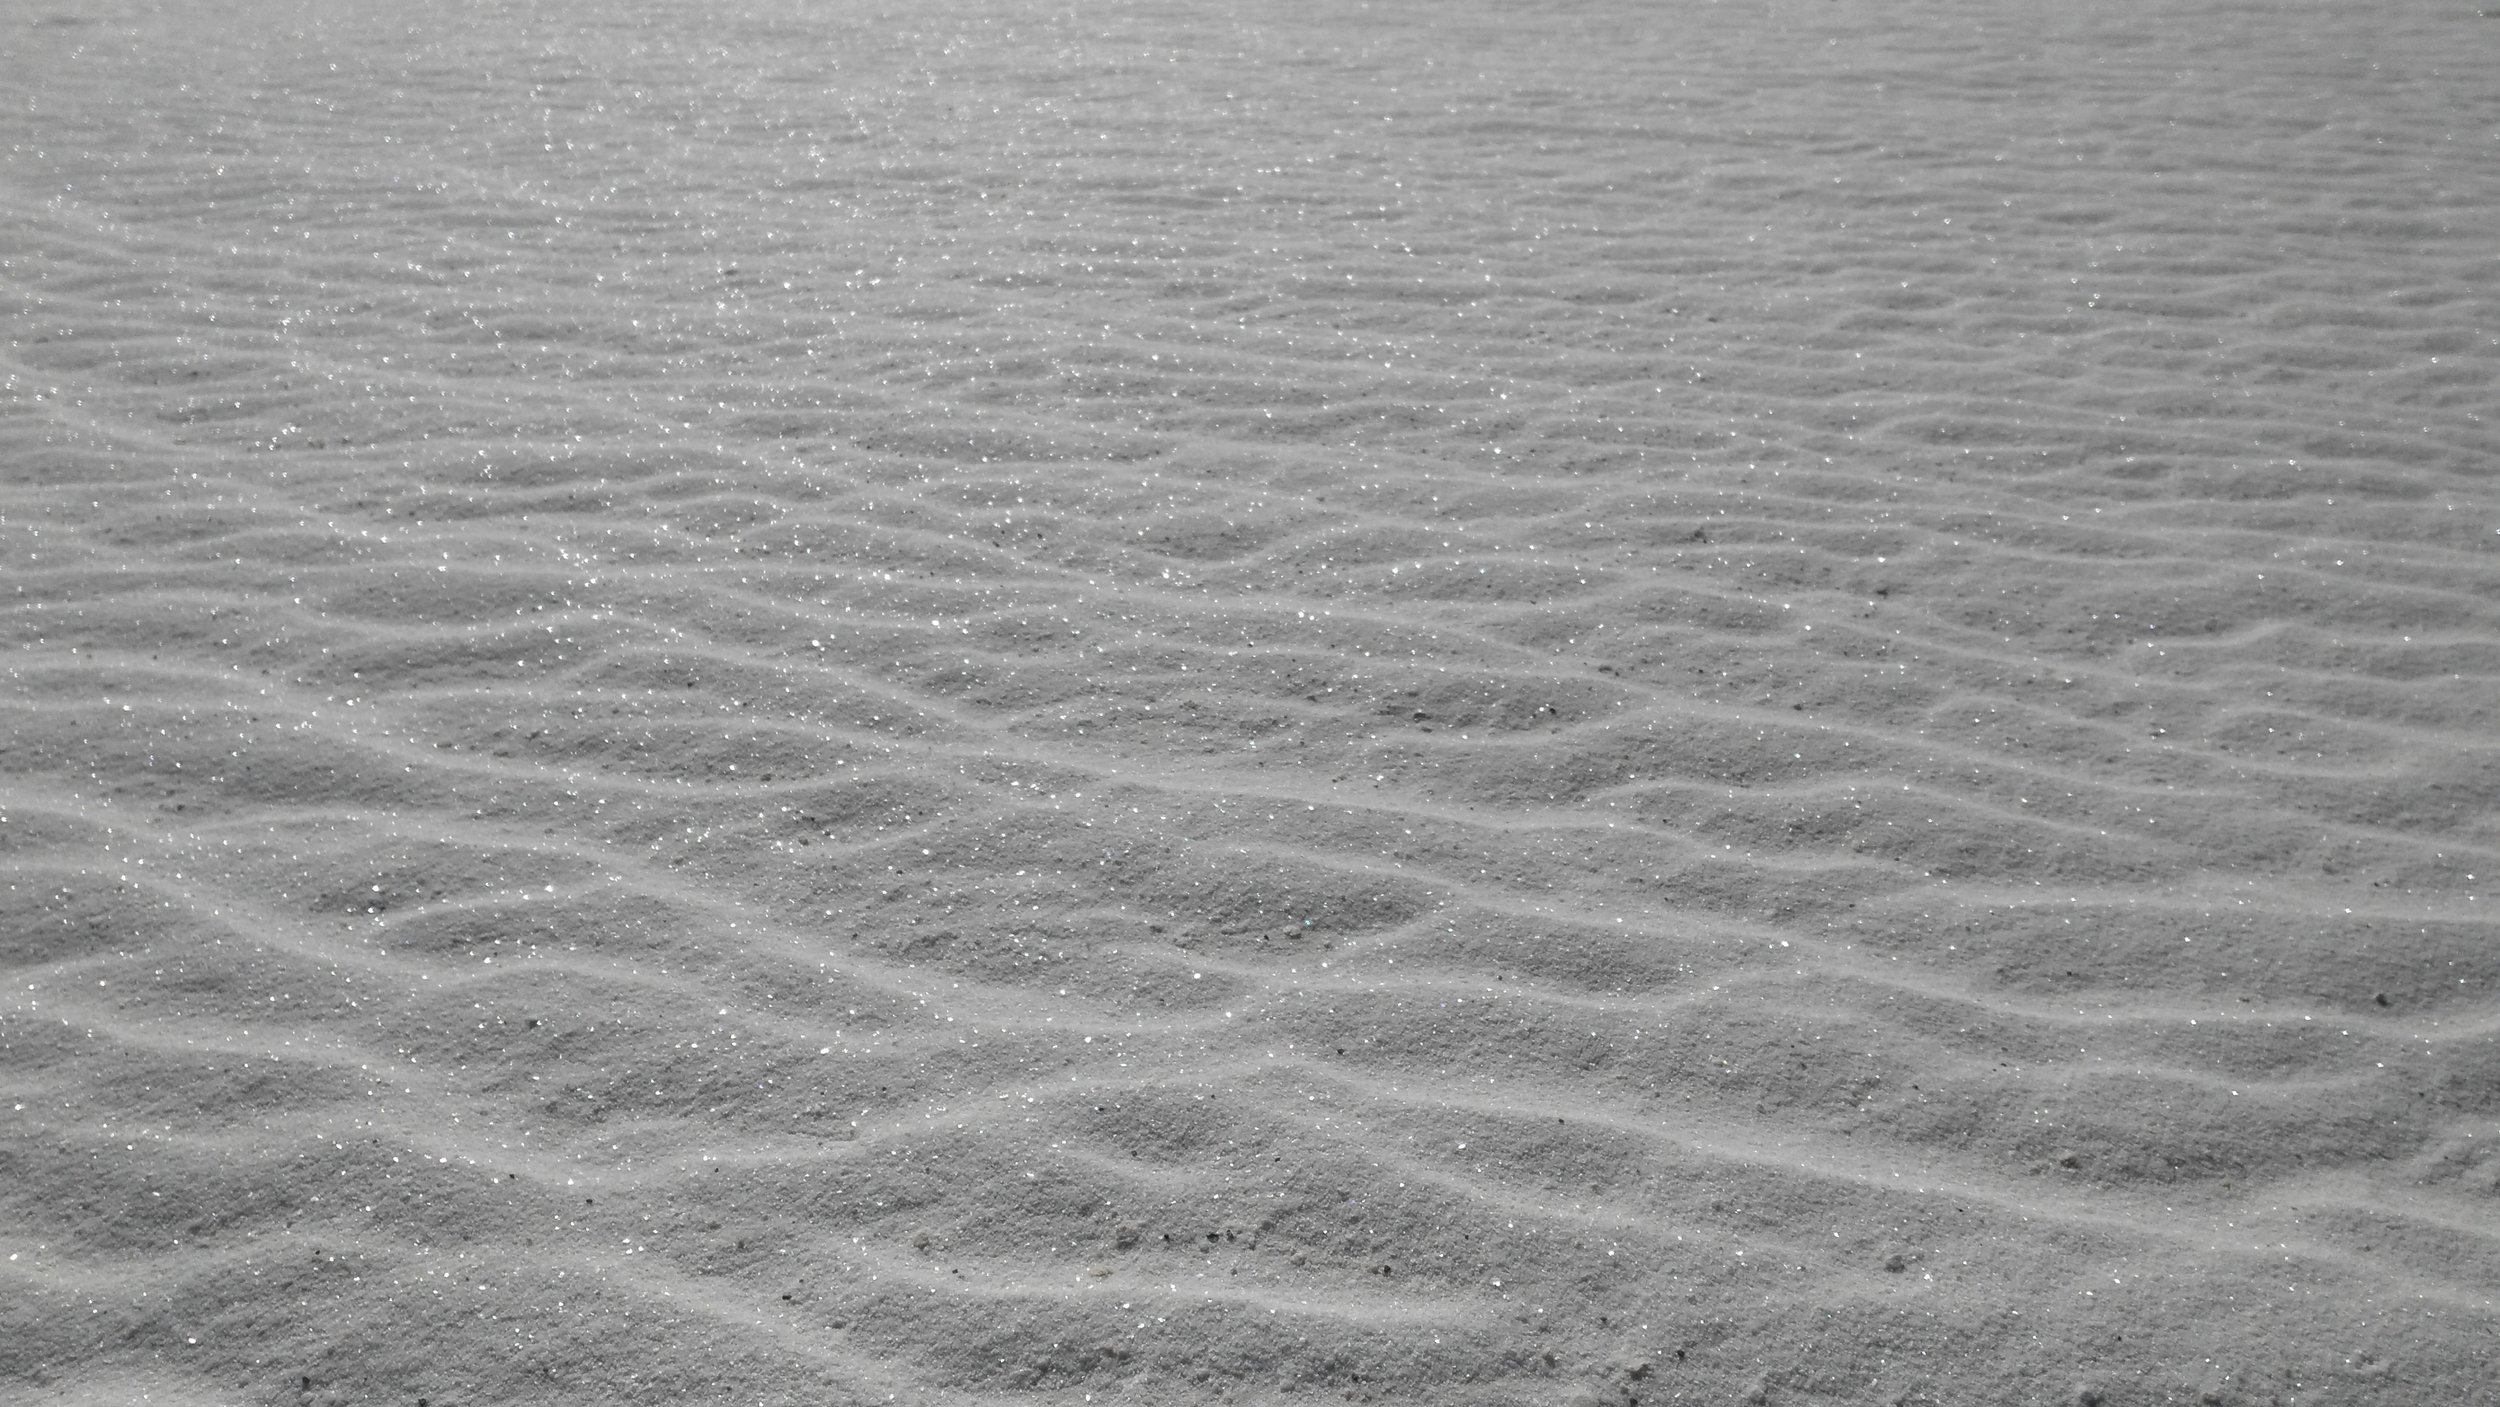 White Sands sand 1.jpg